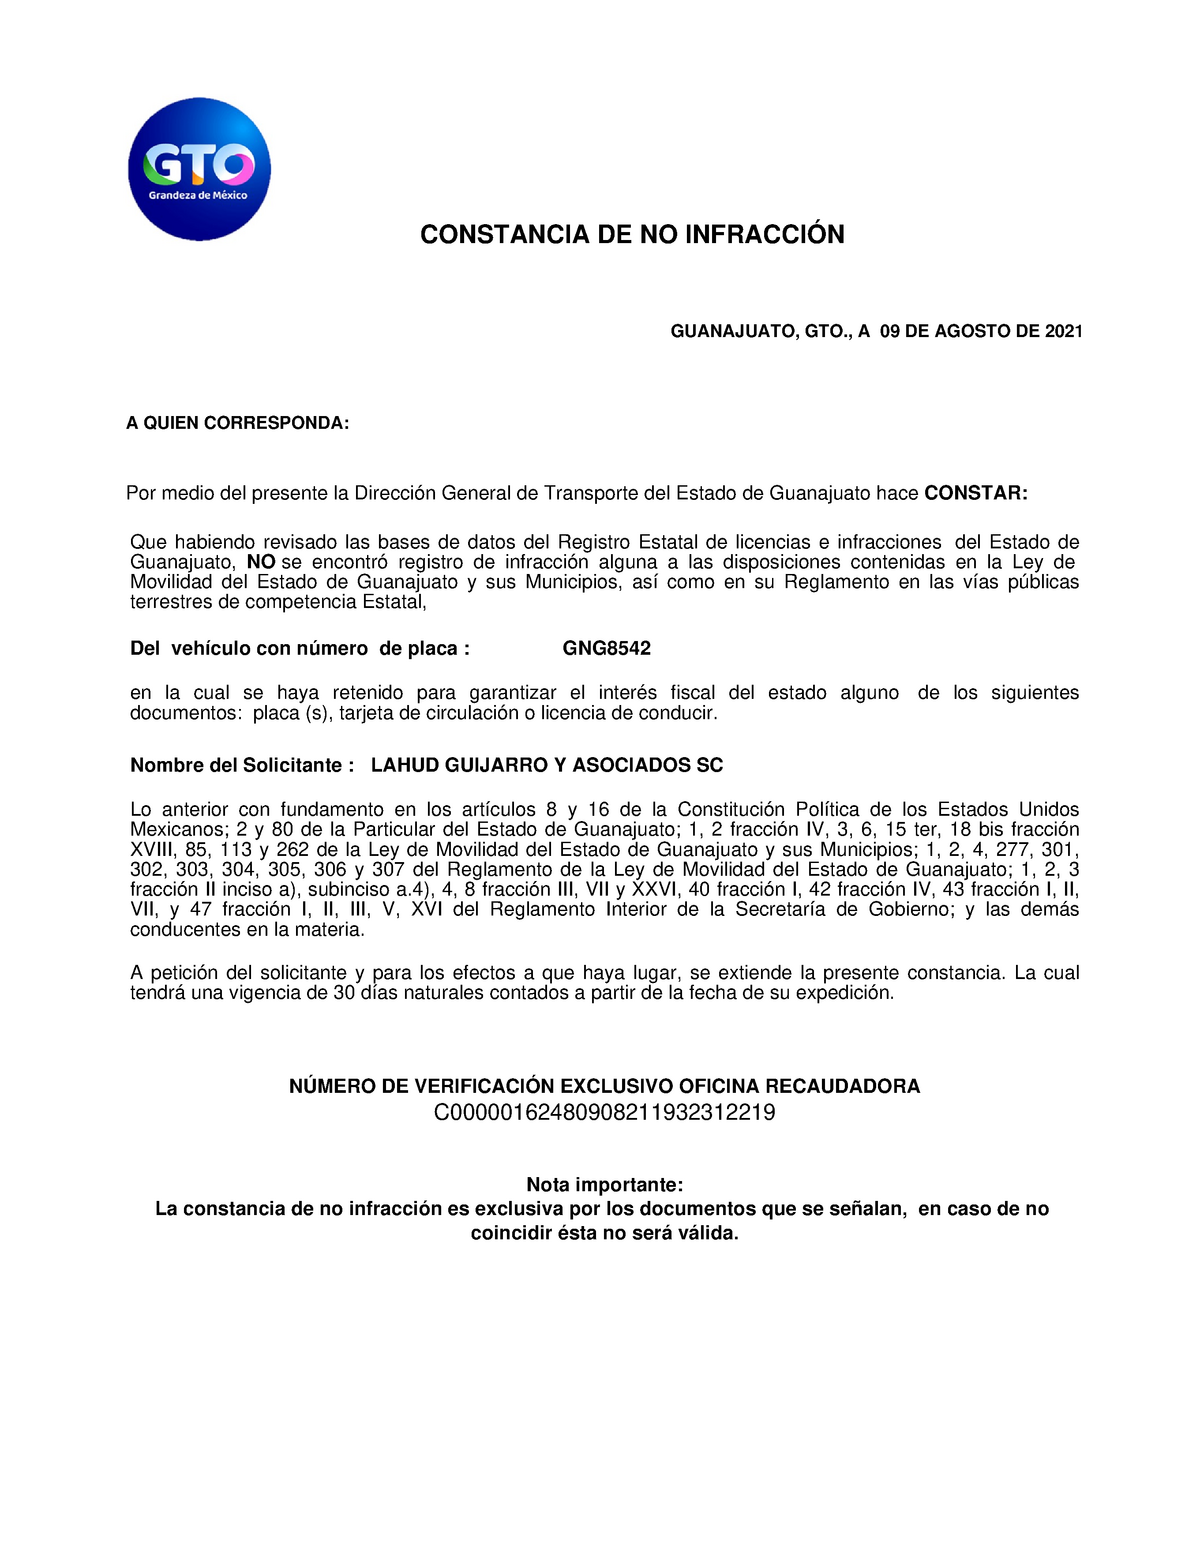 Documentos Baja Placa Gng8542 Constancia De No InfracciÓn Guanajuato Gto A 09 De Agosto De 6195